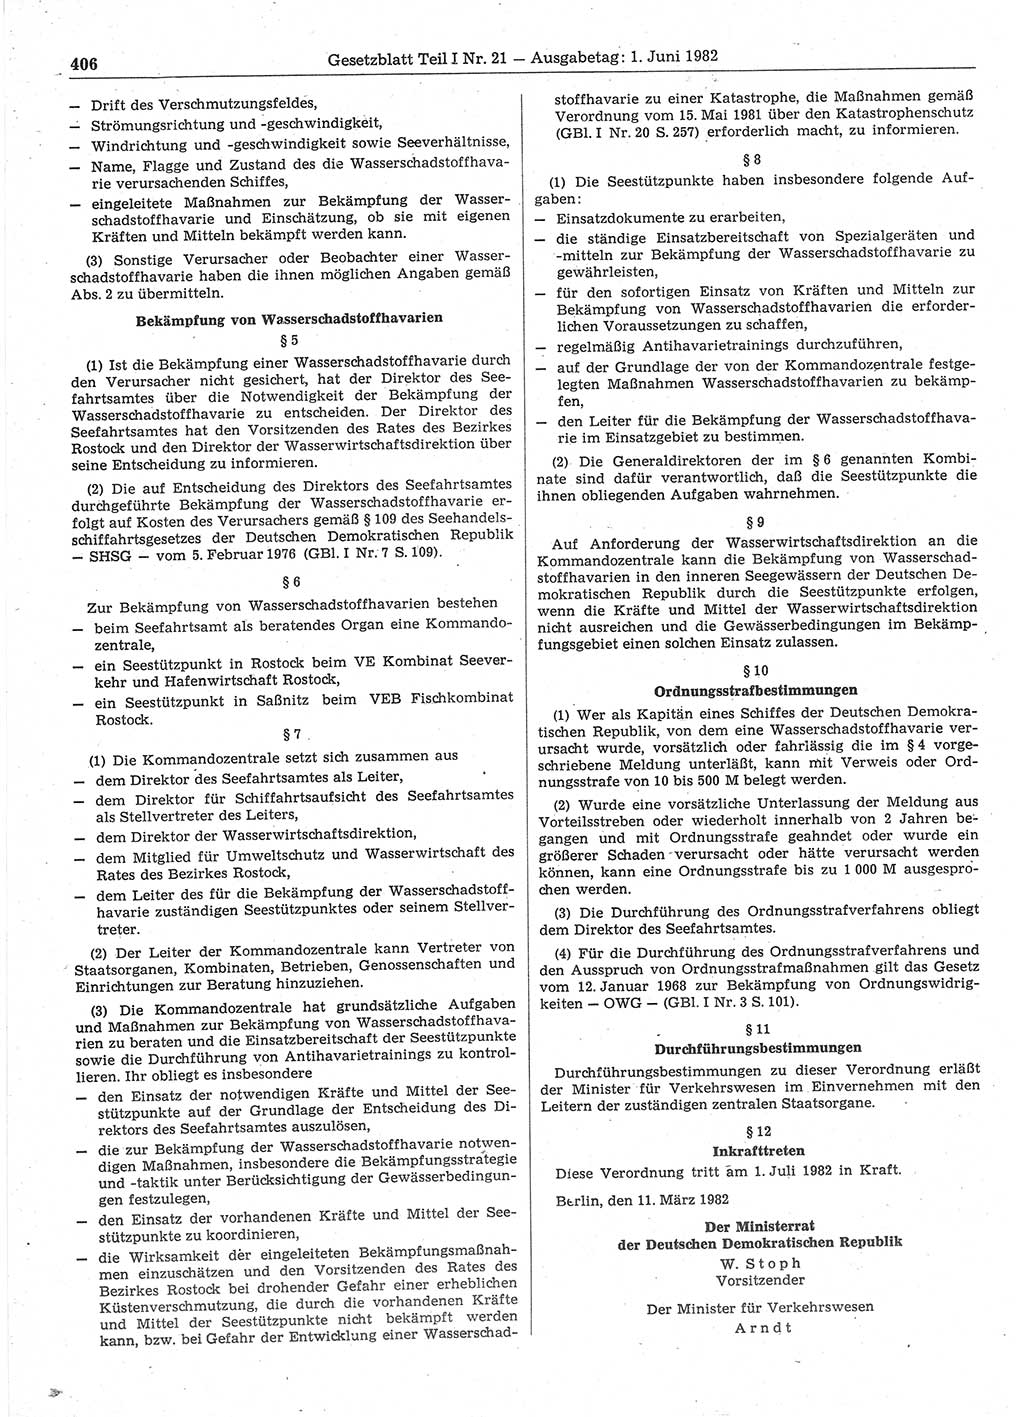 Gesetzblatt (GBl.) der Deutschen Demokratischen Republik (DDR) Teil Ⅰ 1982, Seite 406 (GBl. DDR Ⅰ 1982, S. 406)